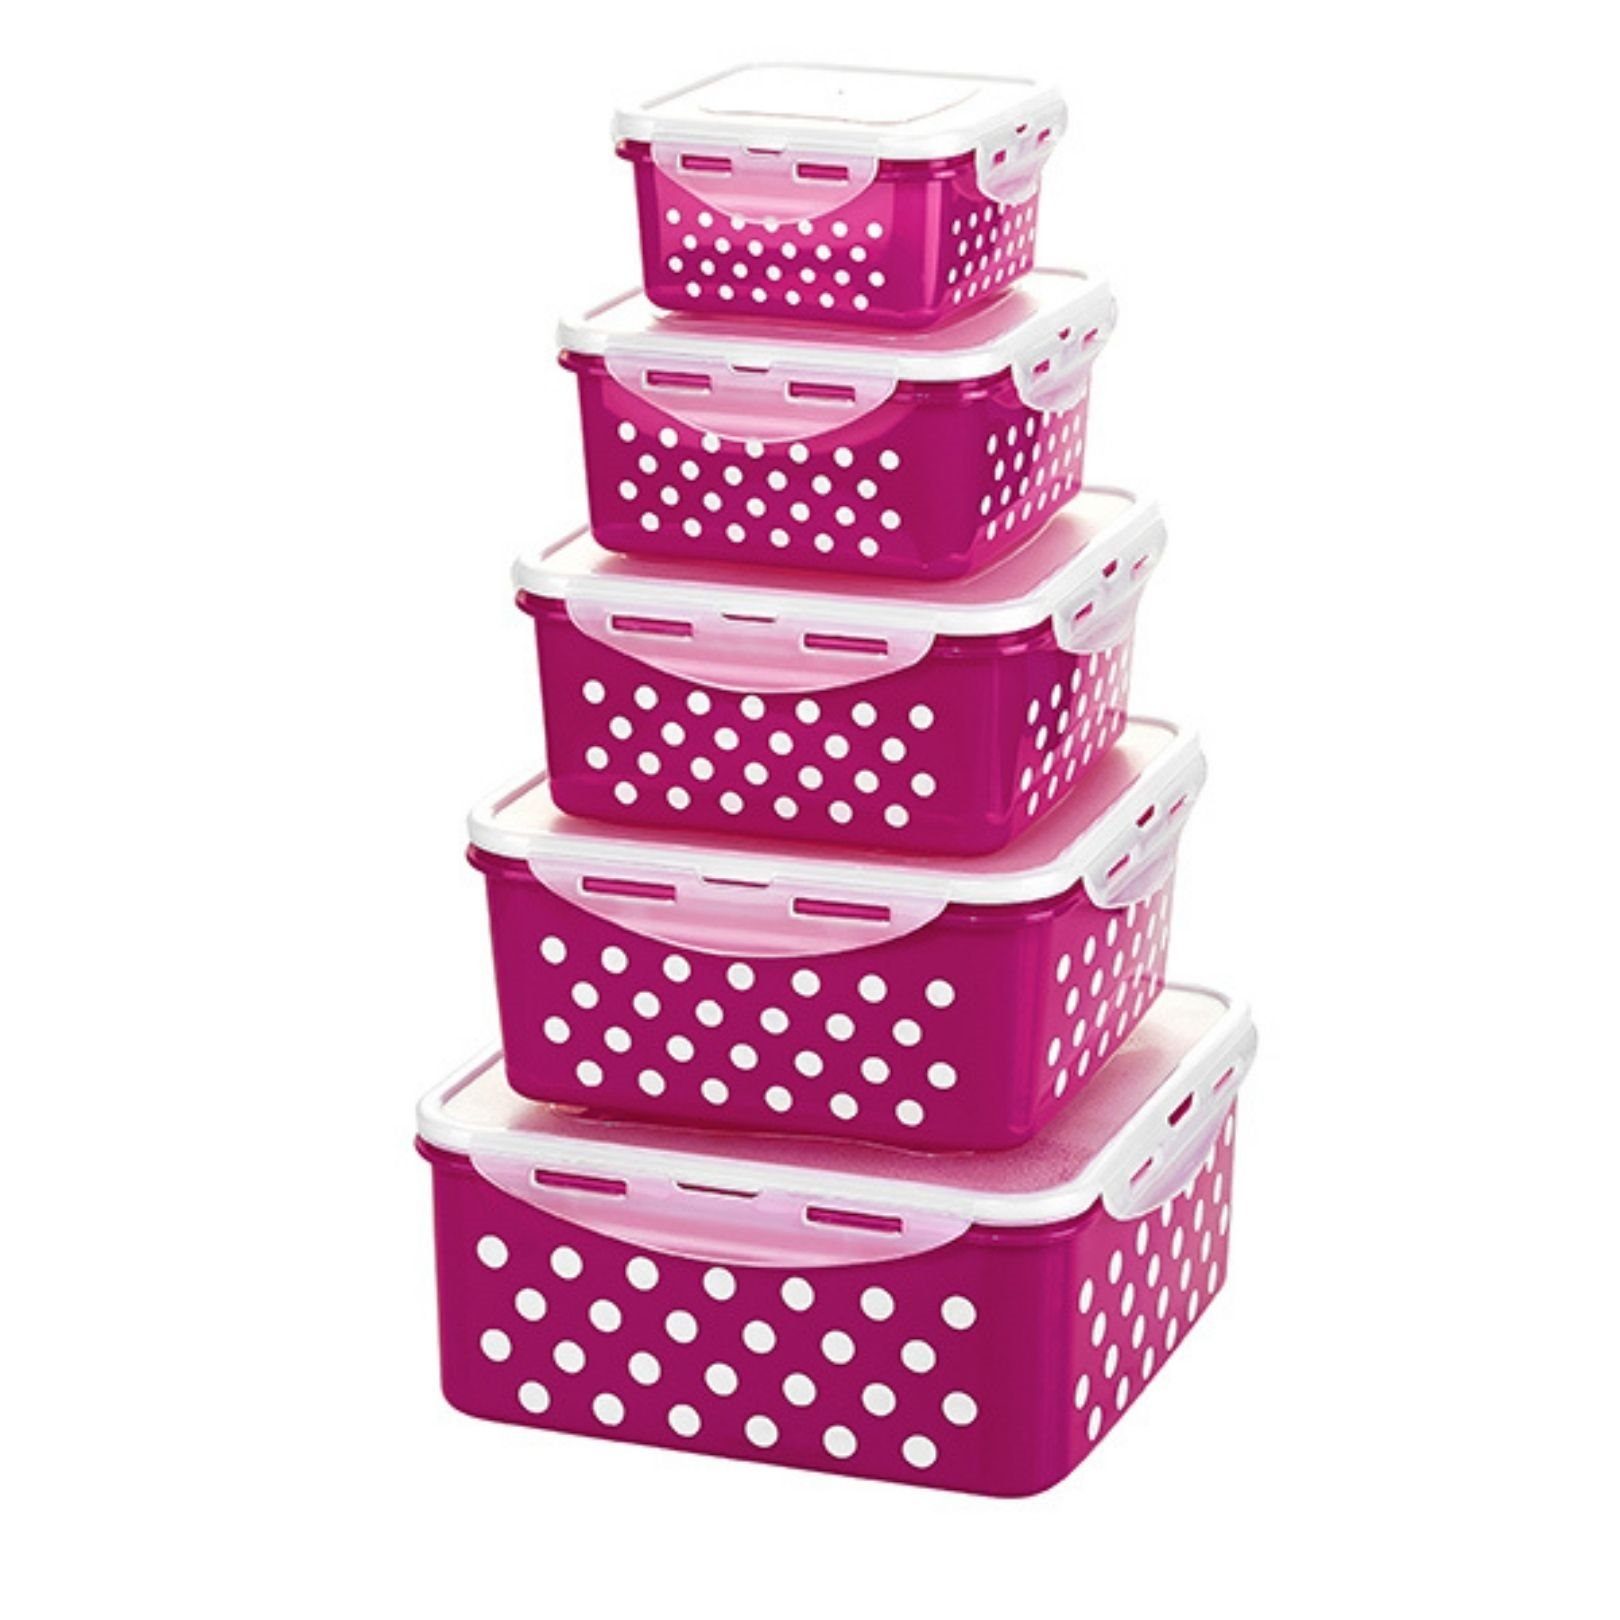 Plentyfy Frischhaltedose Frischesystem, Kunststoff, (Bunte Küche Set, 10-tlg., 10 tlg., 5 Dosen, 5 Deckel), Frischhaltedose mit Deckel - Vorratsdosen Set